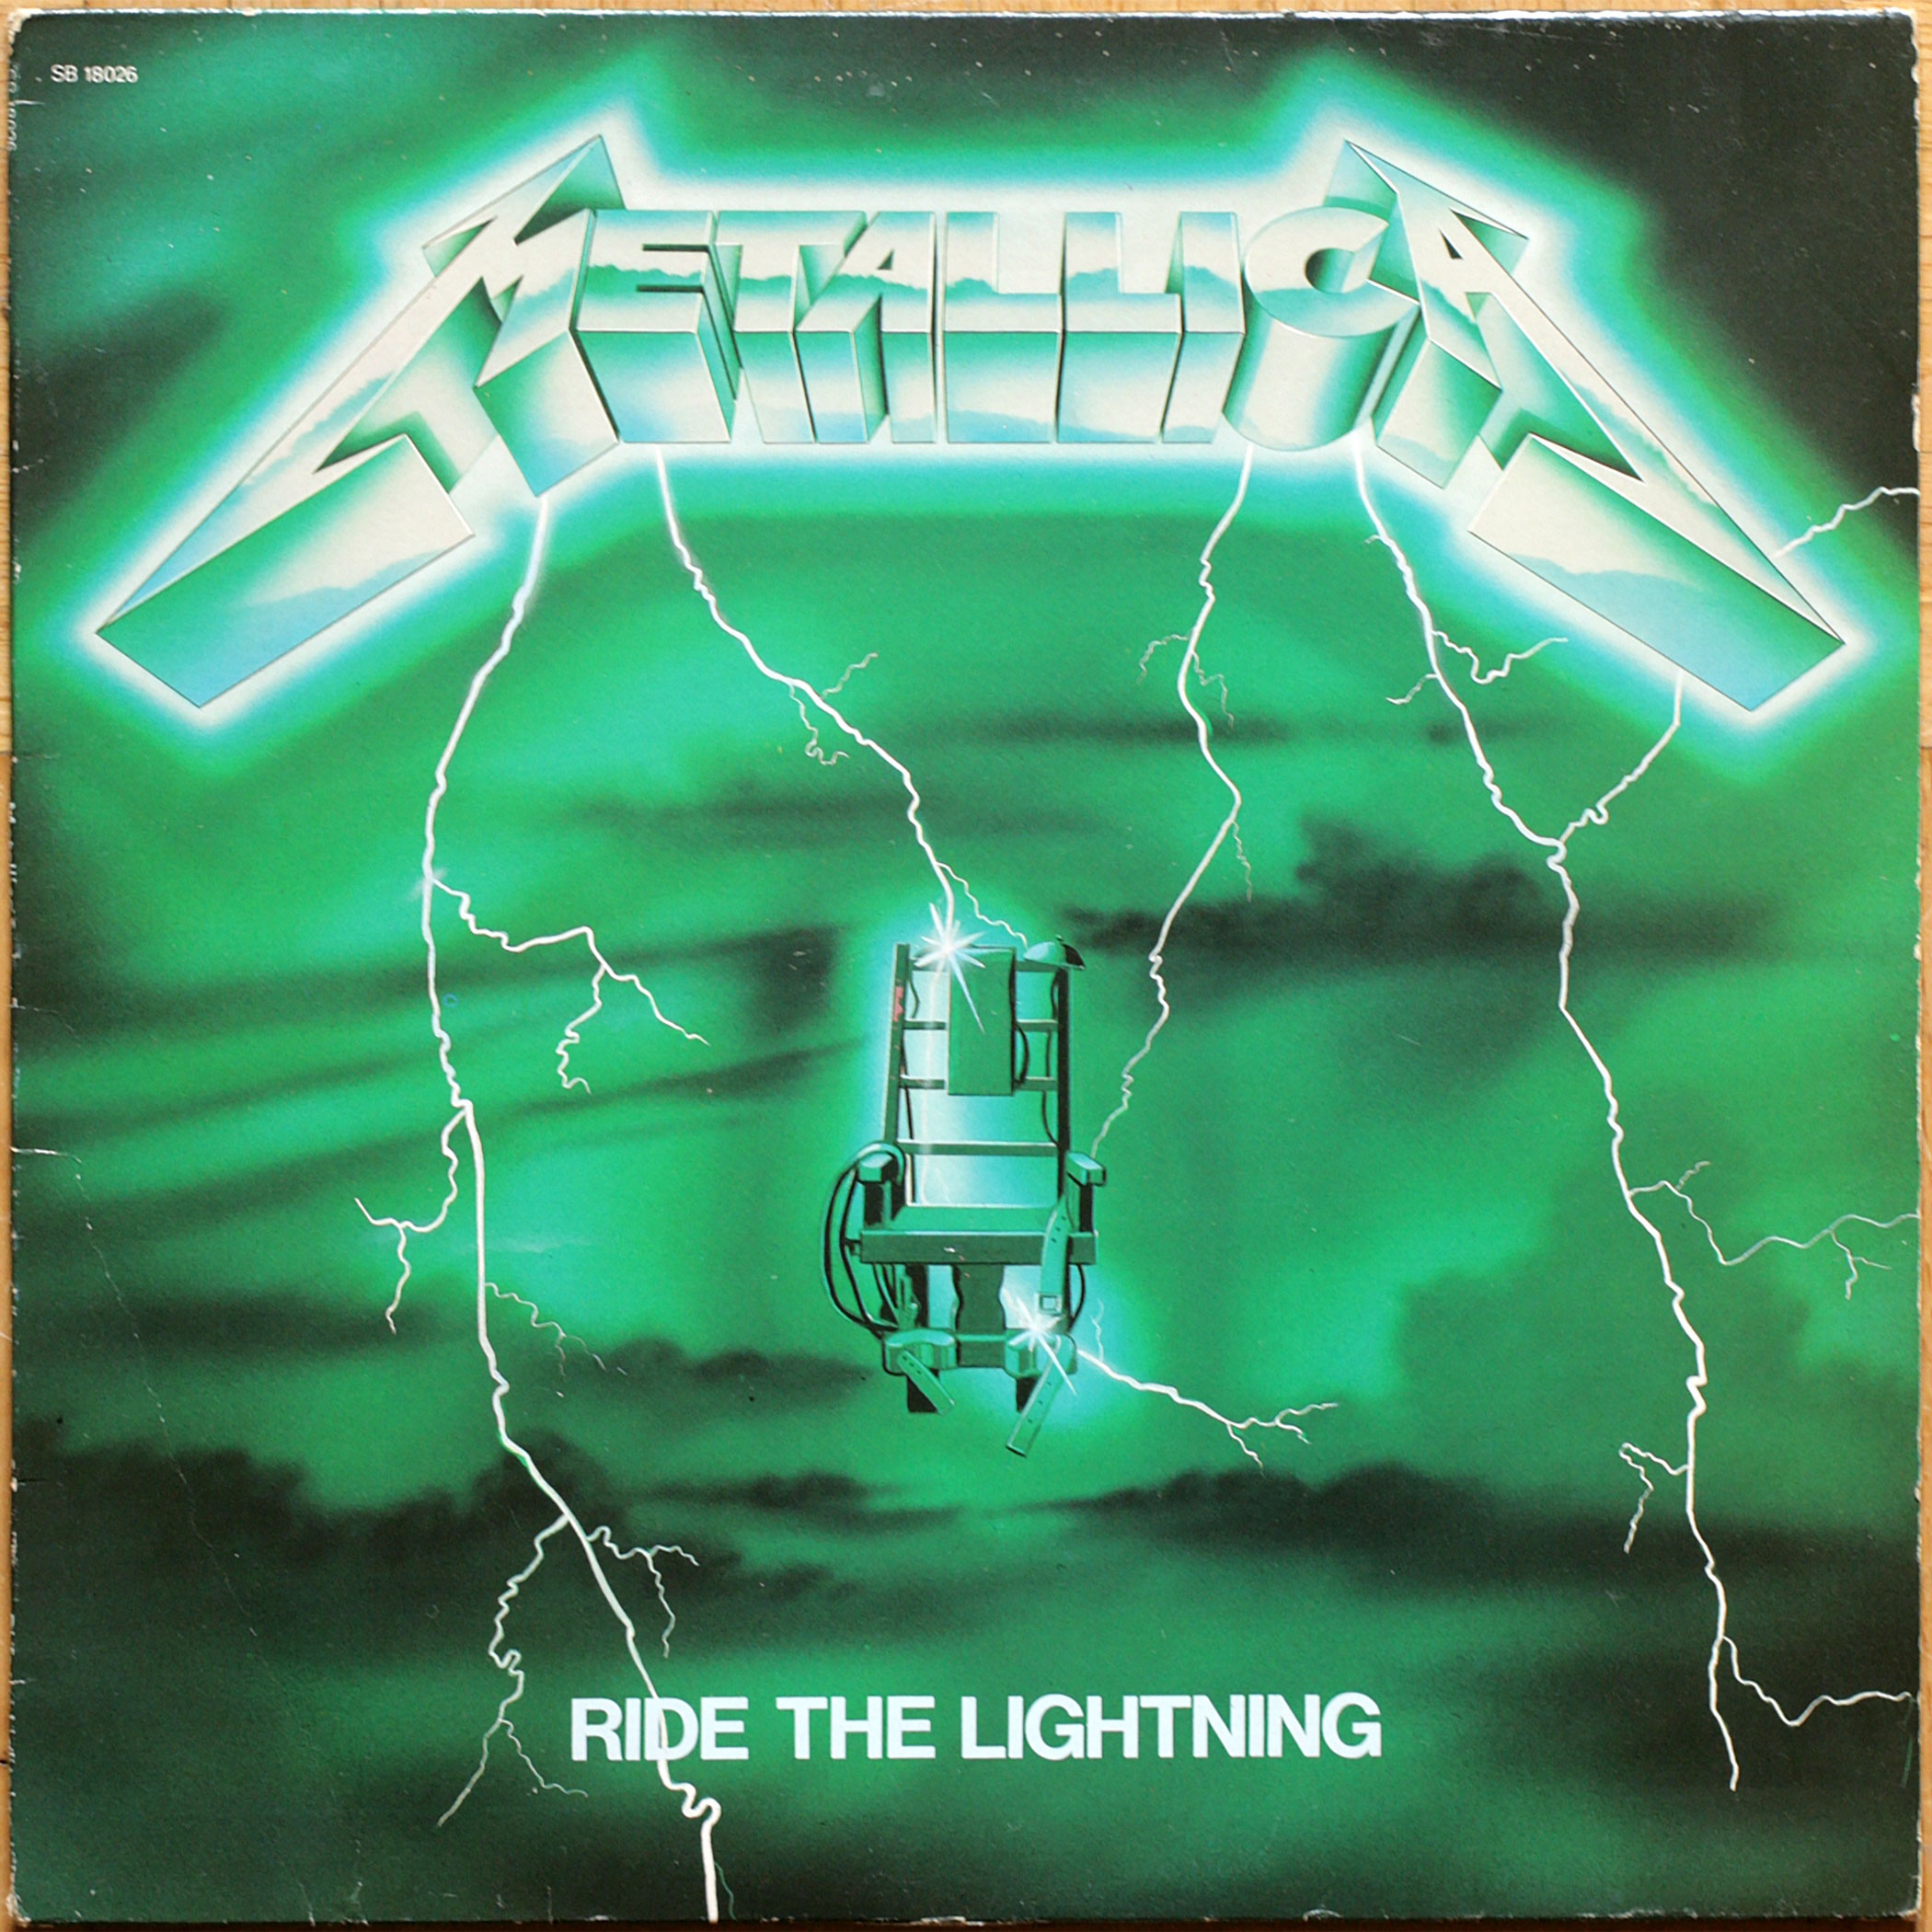 Metallica • Ride the lightning • Bernett Records – Music for nations SB 18026 • Edition française avec pochette verte • French green cover